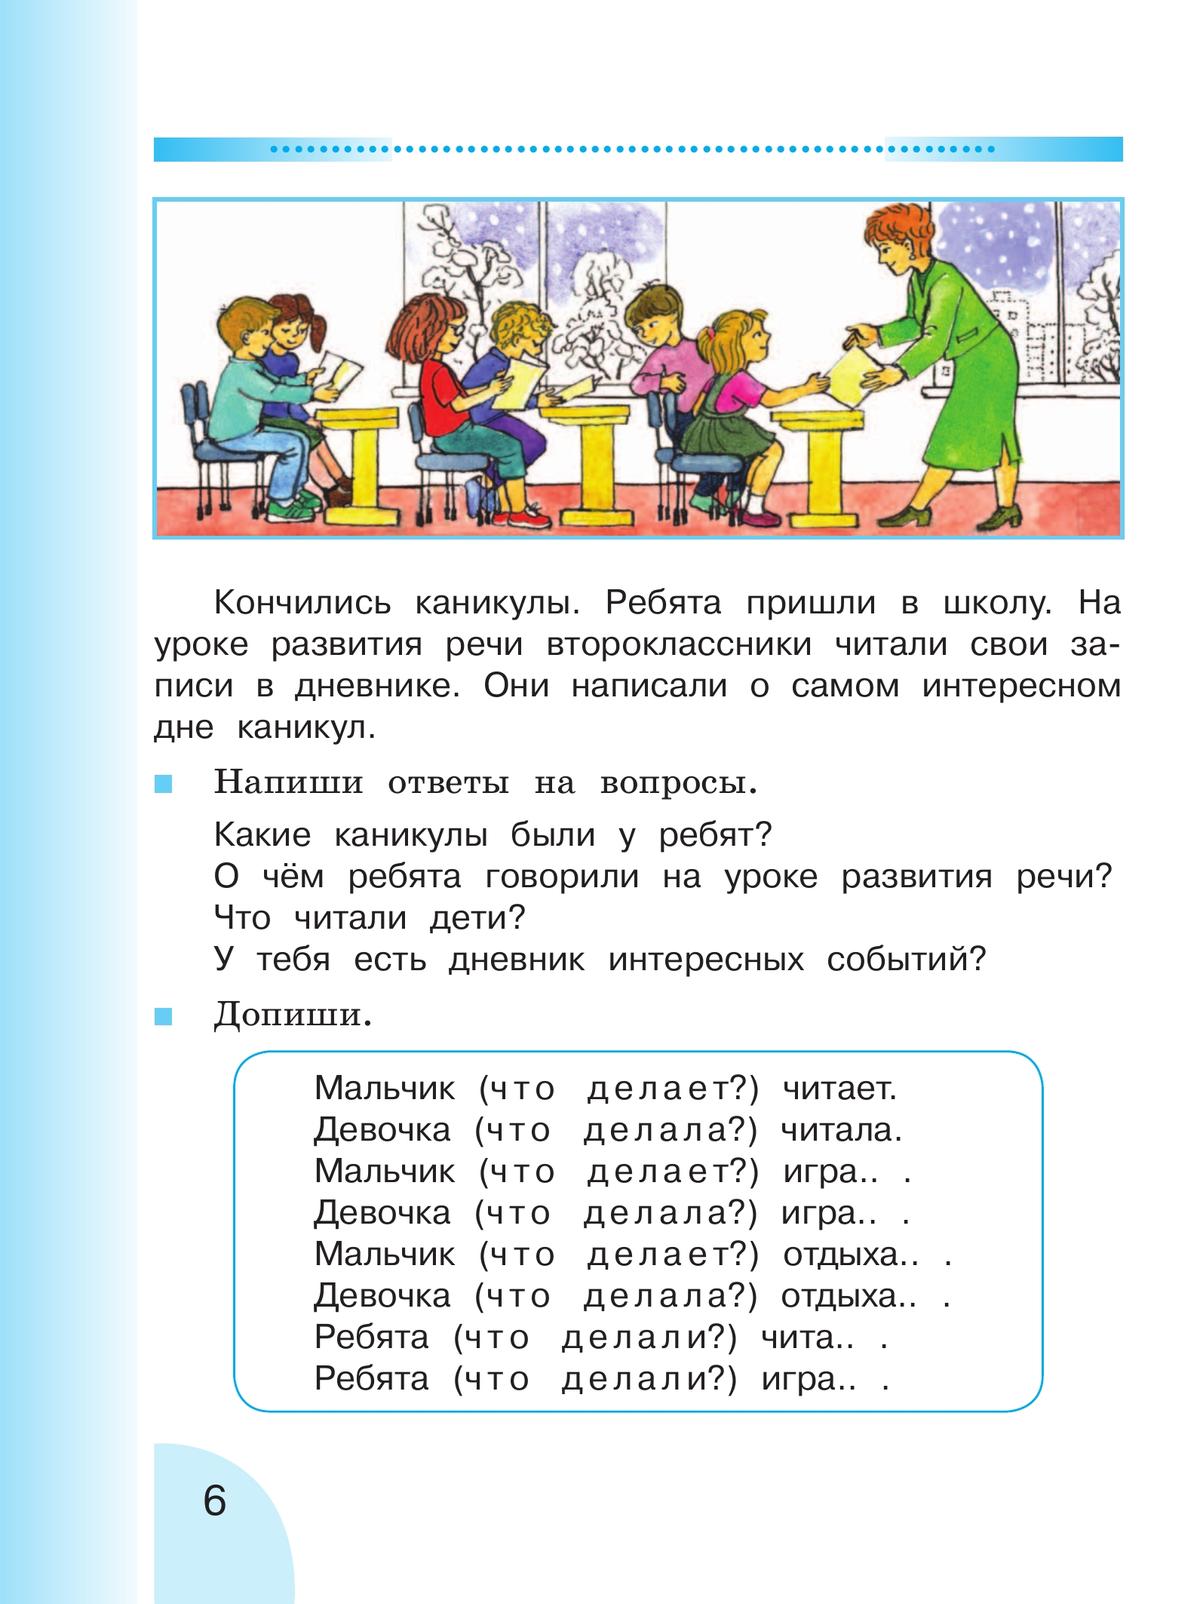 Русский язык. Развитие речи. 2 класс. Учебник. В 2 ч. Часть 2 (для глухих обучающихся) 11